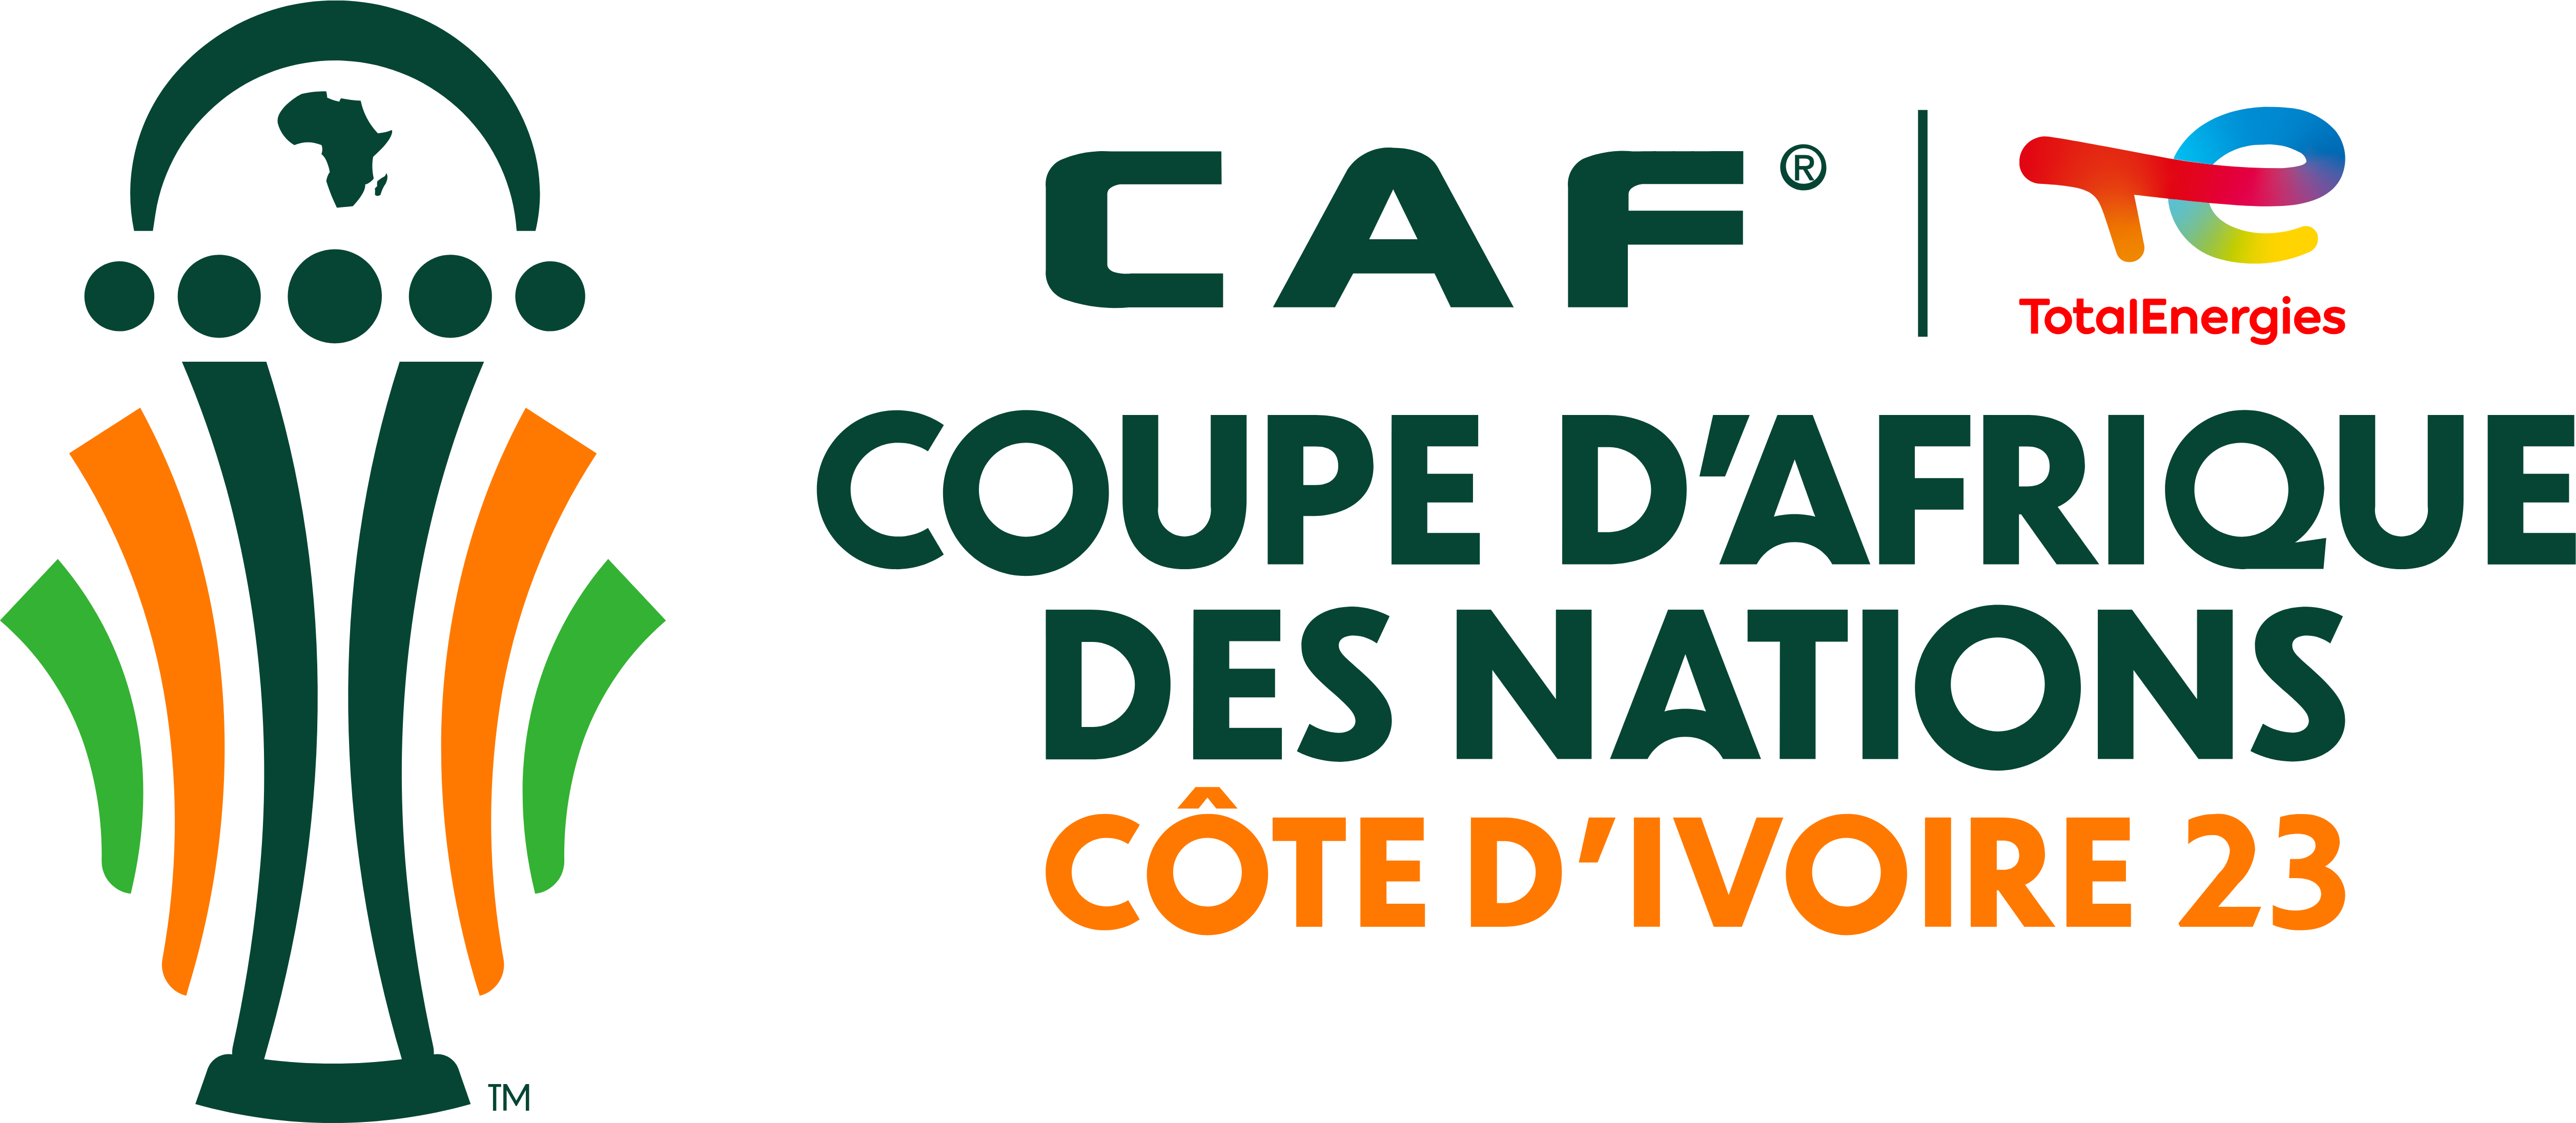 Football : Cameroun et Algérie risquent de quitter la CAN